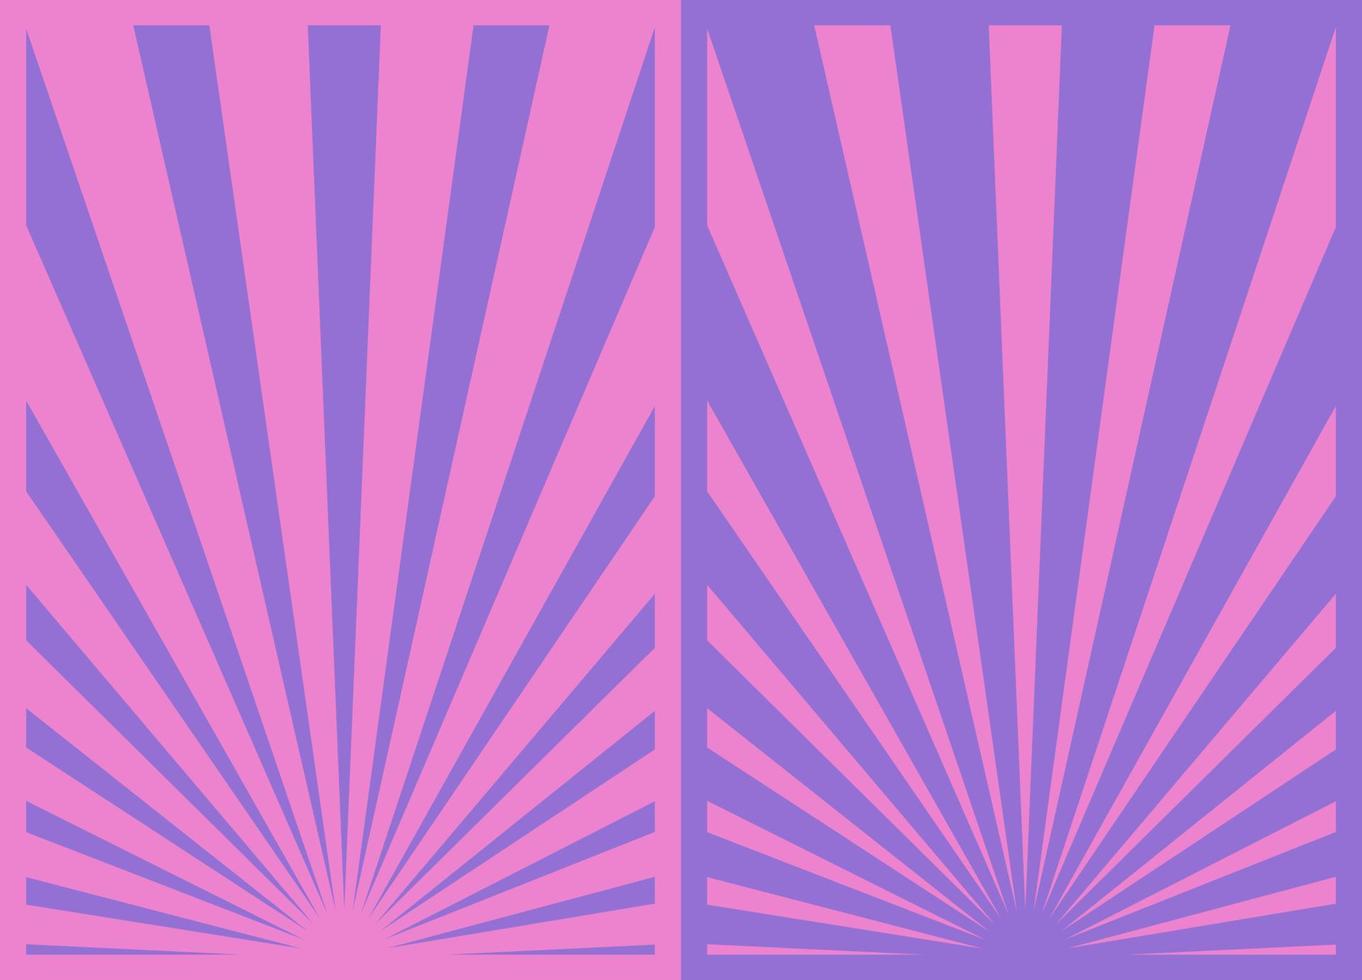 conjunto de pôster de listras de sunburst rosa roxo vintage, modelo com raios centrados na parte inferior. pôsteres verticais inspirados em desenhos retrô. vetor